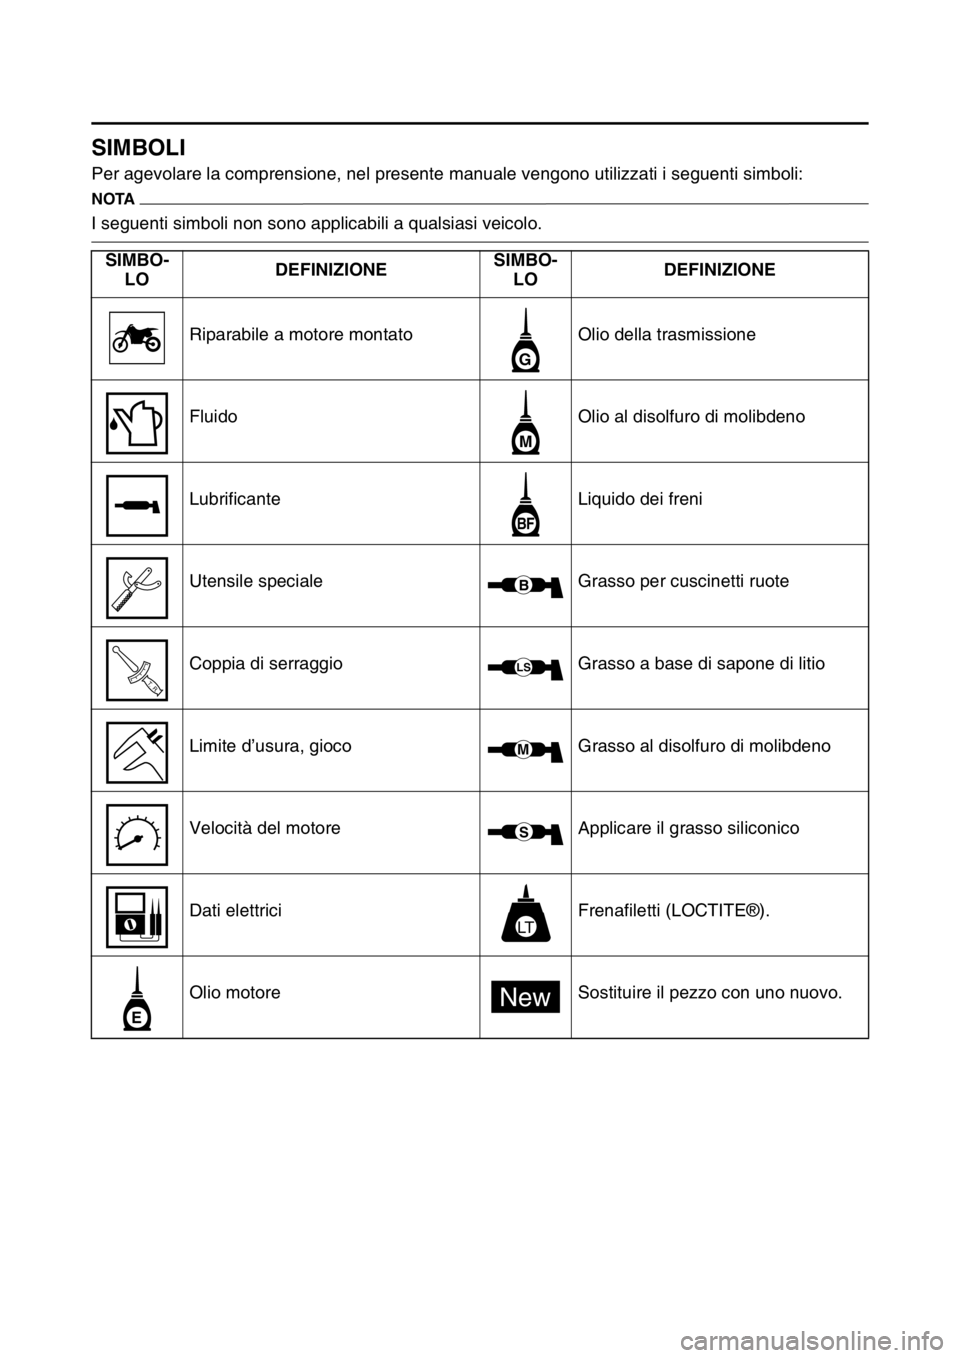 YAMAHA WR 250F 2016  Manuale duso (in Italian) HAS2GB3007
SIMBOLI
Per agevolare la comprensione, nel presente manuale vengono utilizzati i seguenti simboli:
NOTA
I seguenti simboli non sono applicabili a qualsiasi veicolo.
SIMBO-
LODEFINIZIONESIMB